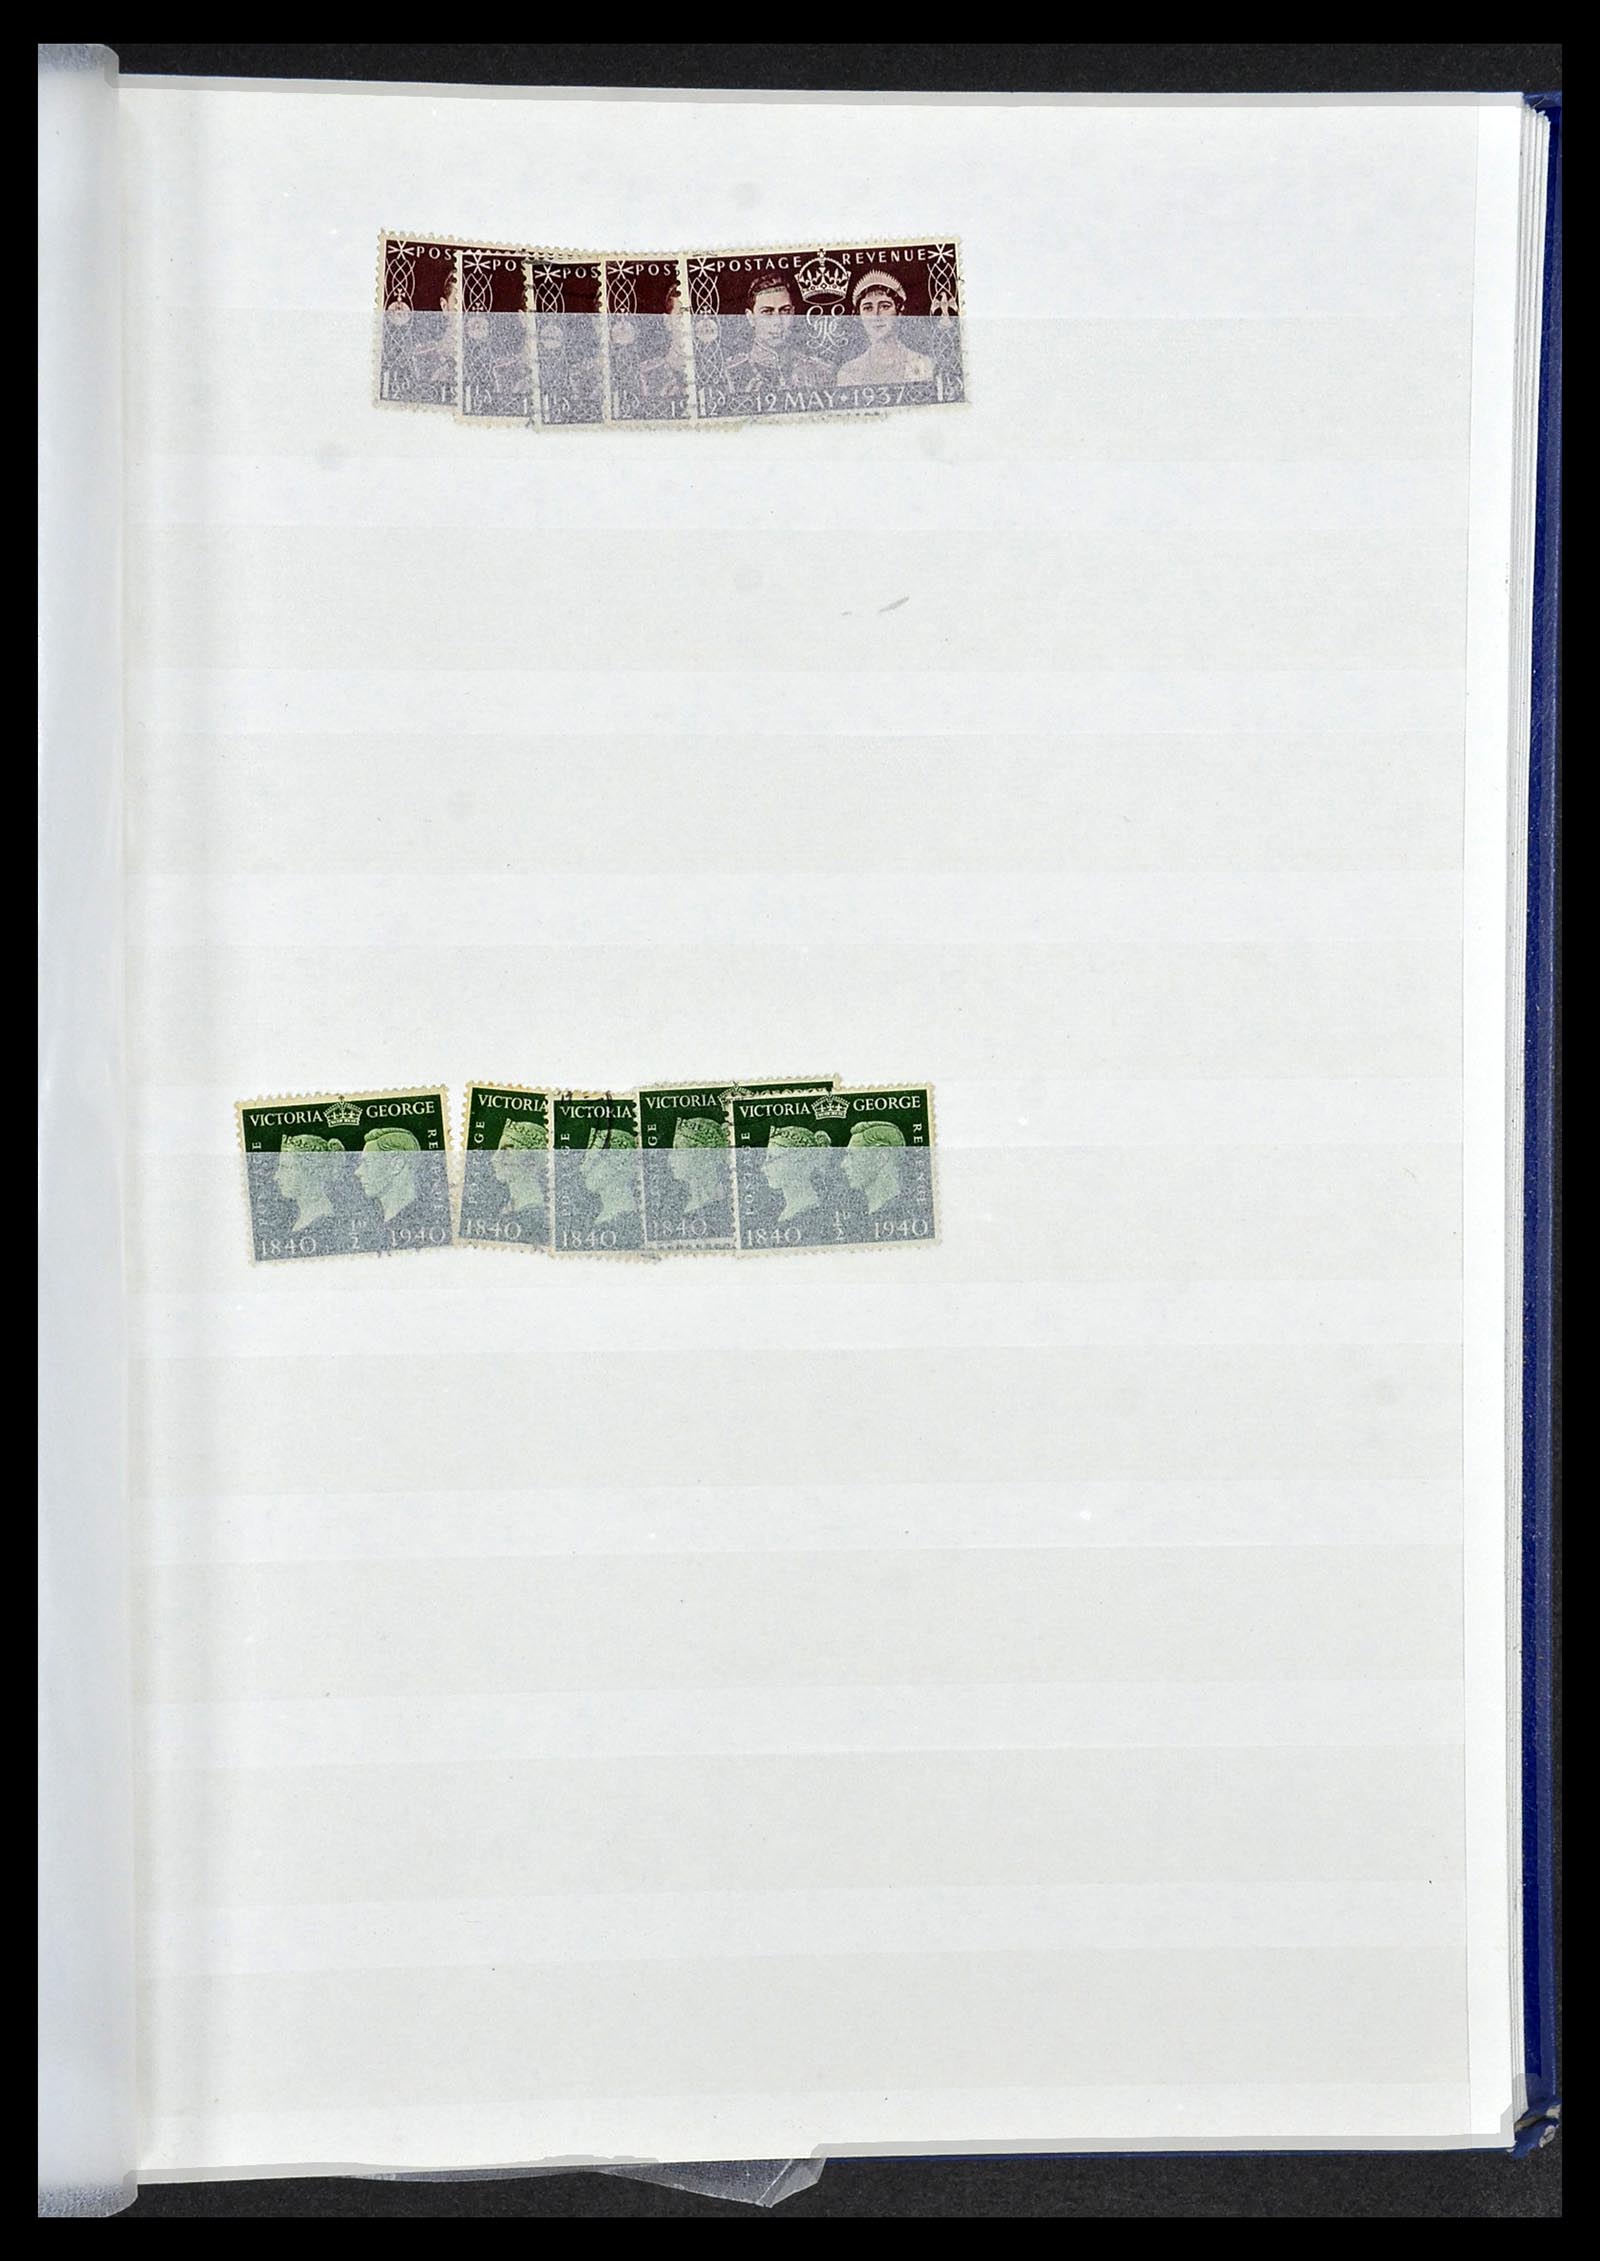 34368 065 - Postzegelverzameling 34368 Engeland uitzoekpartij 1858-1990.